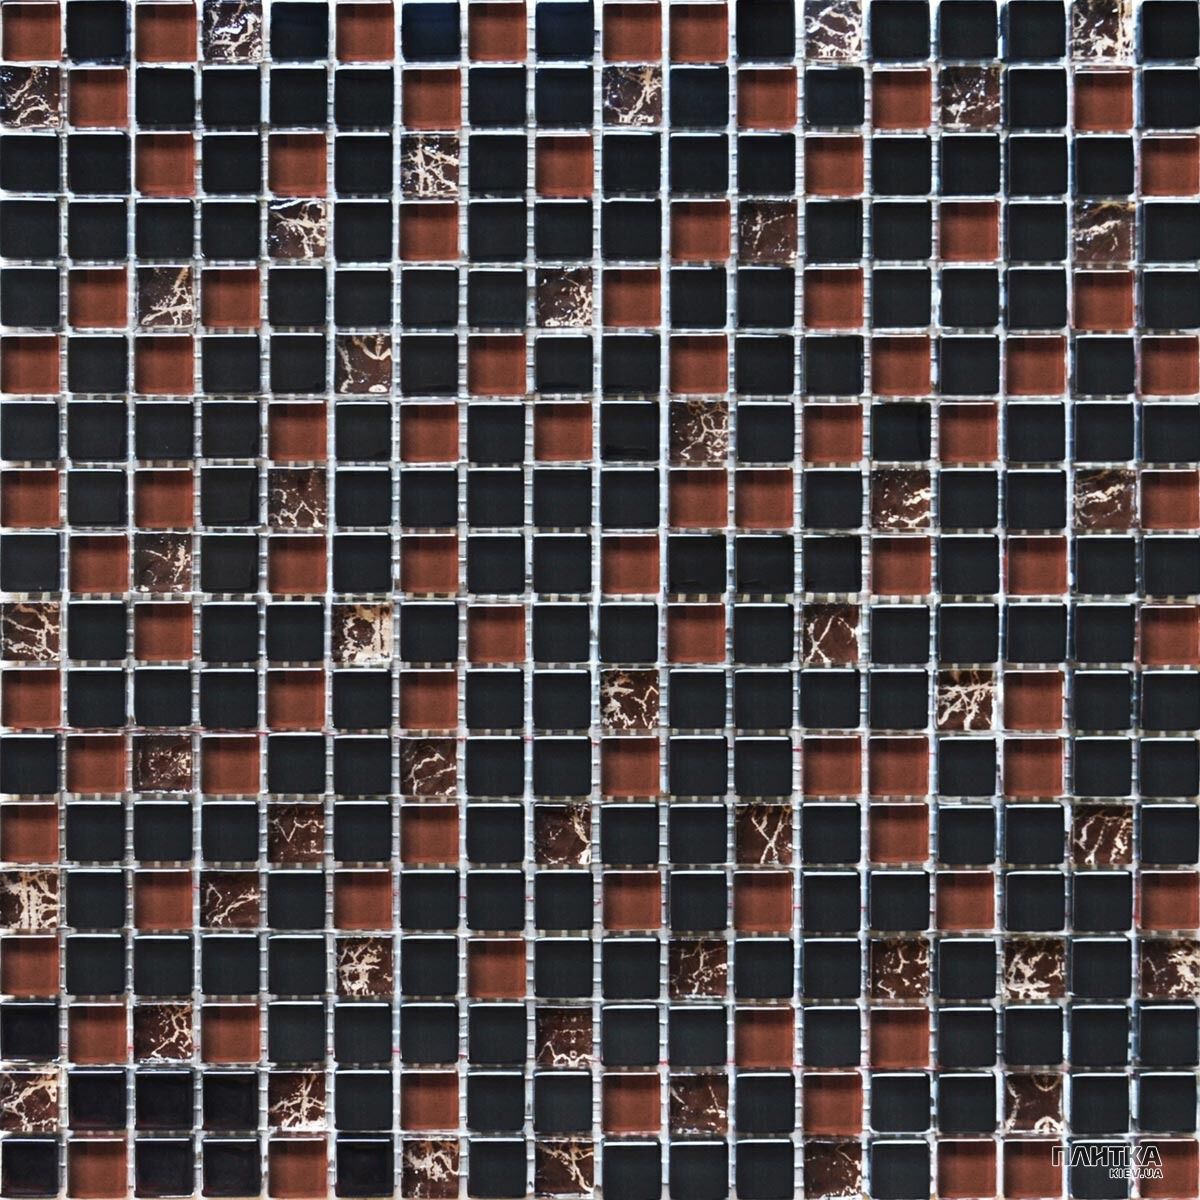 Мозаика Grand Kerama 2076 микс черный камень коричневый,черный